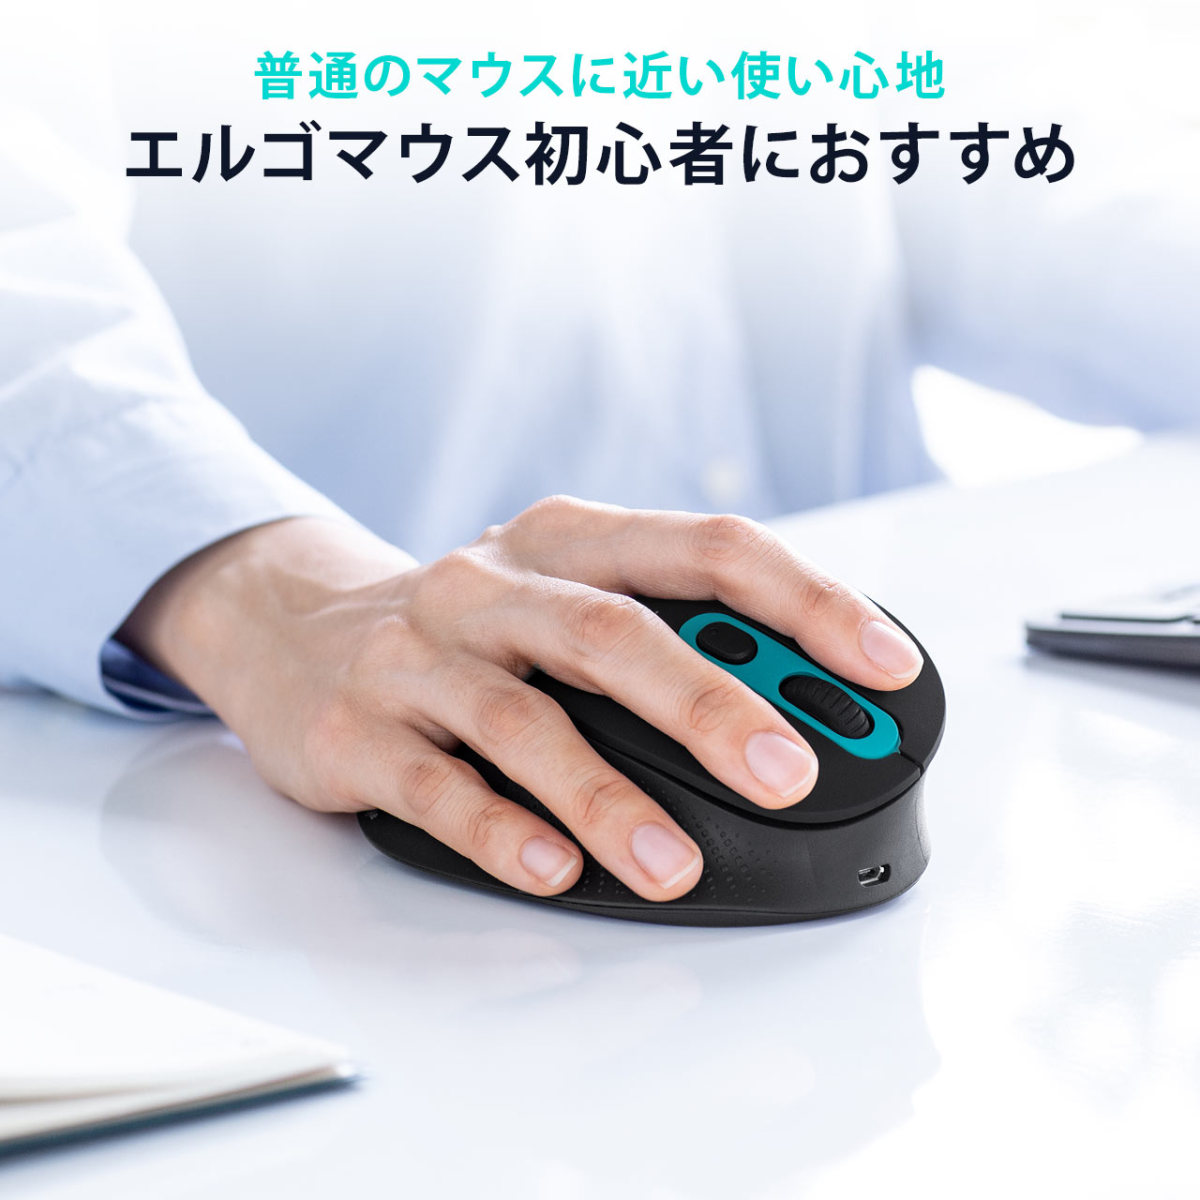 マウス ワイヤレス ゲーミングマウス USB 光学式 4ボタン 2.4G (イエロー) _